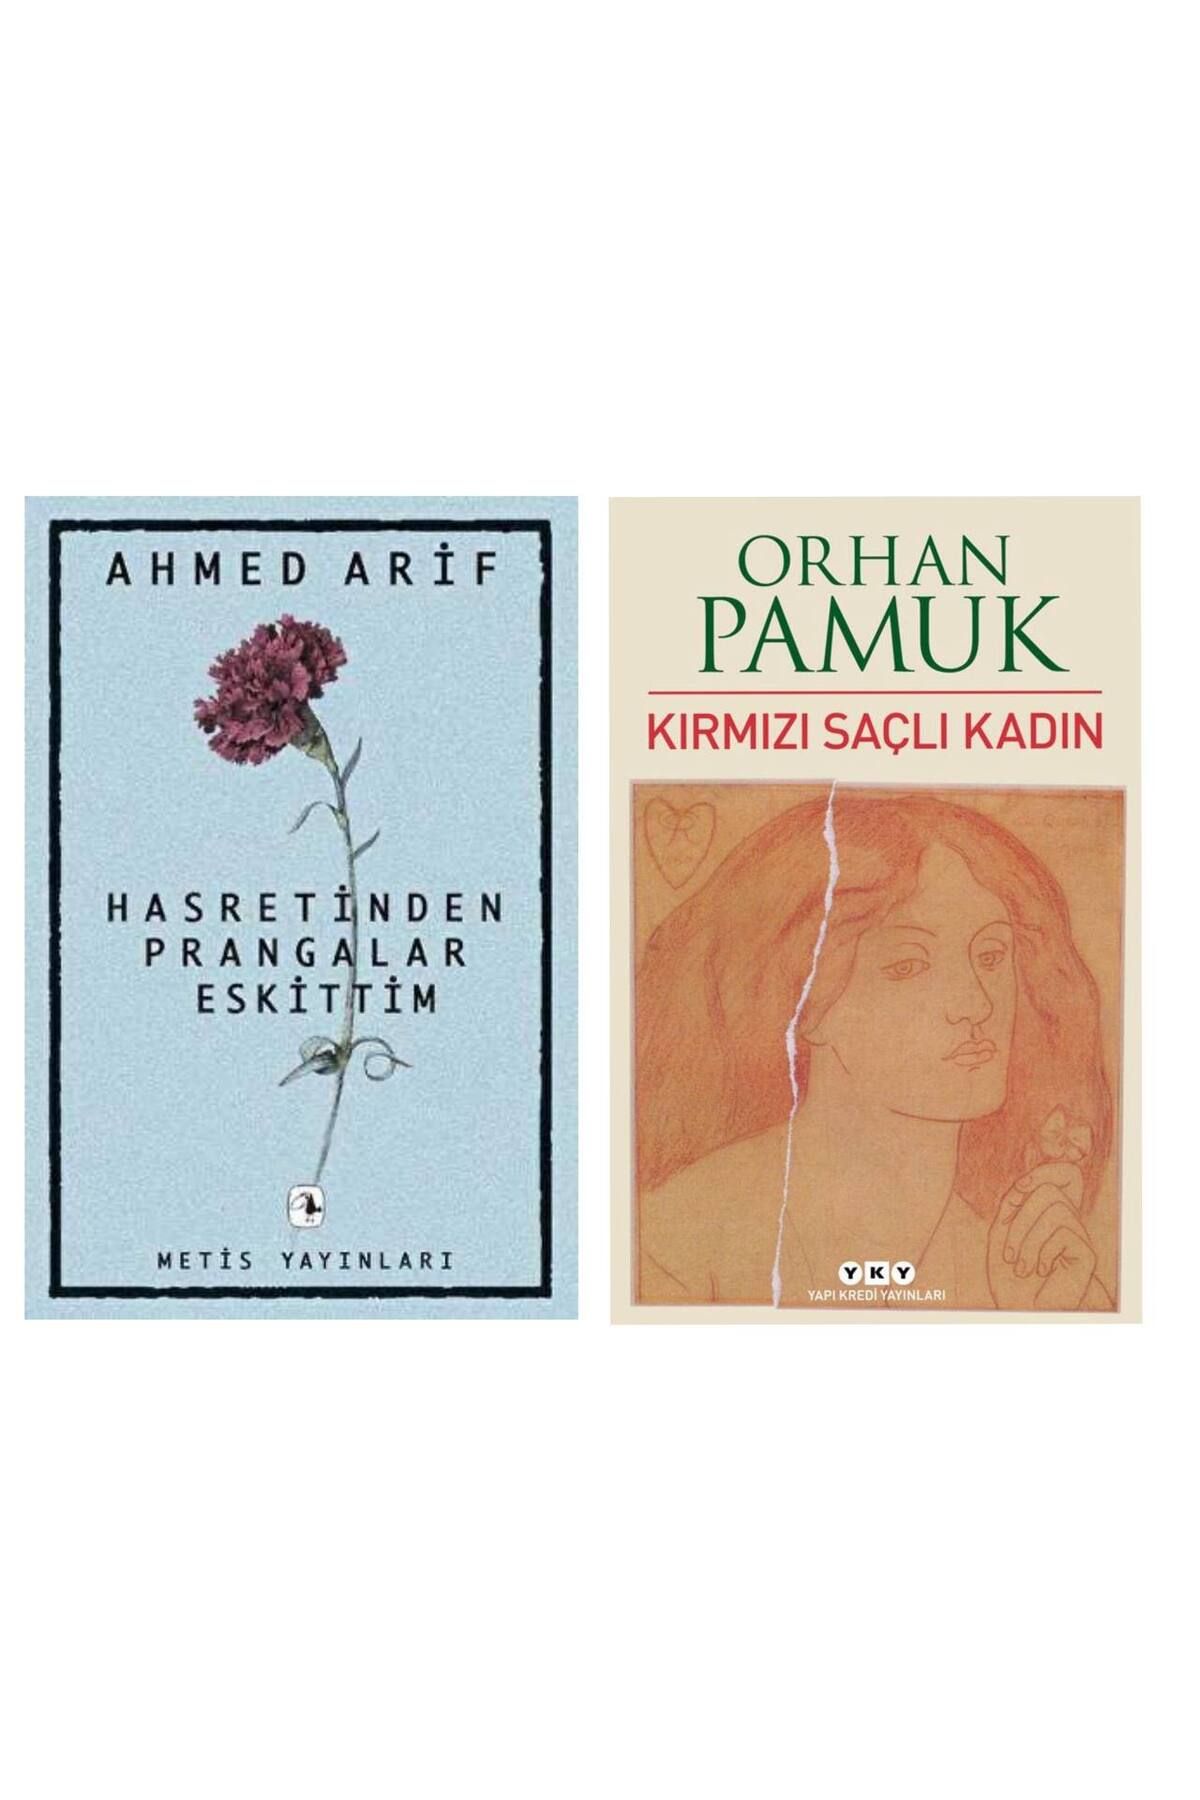 Metis Yayıncılık Hasretin Prangalar Eskittim - Ahmed Arif - Kırmızı Saçlı Kadın - Orhan Pamuk